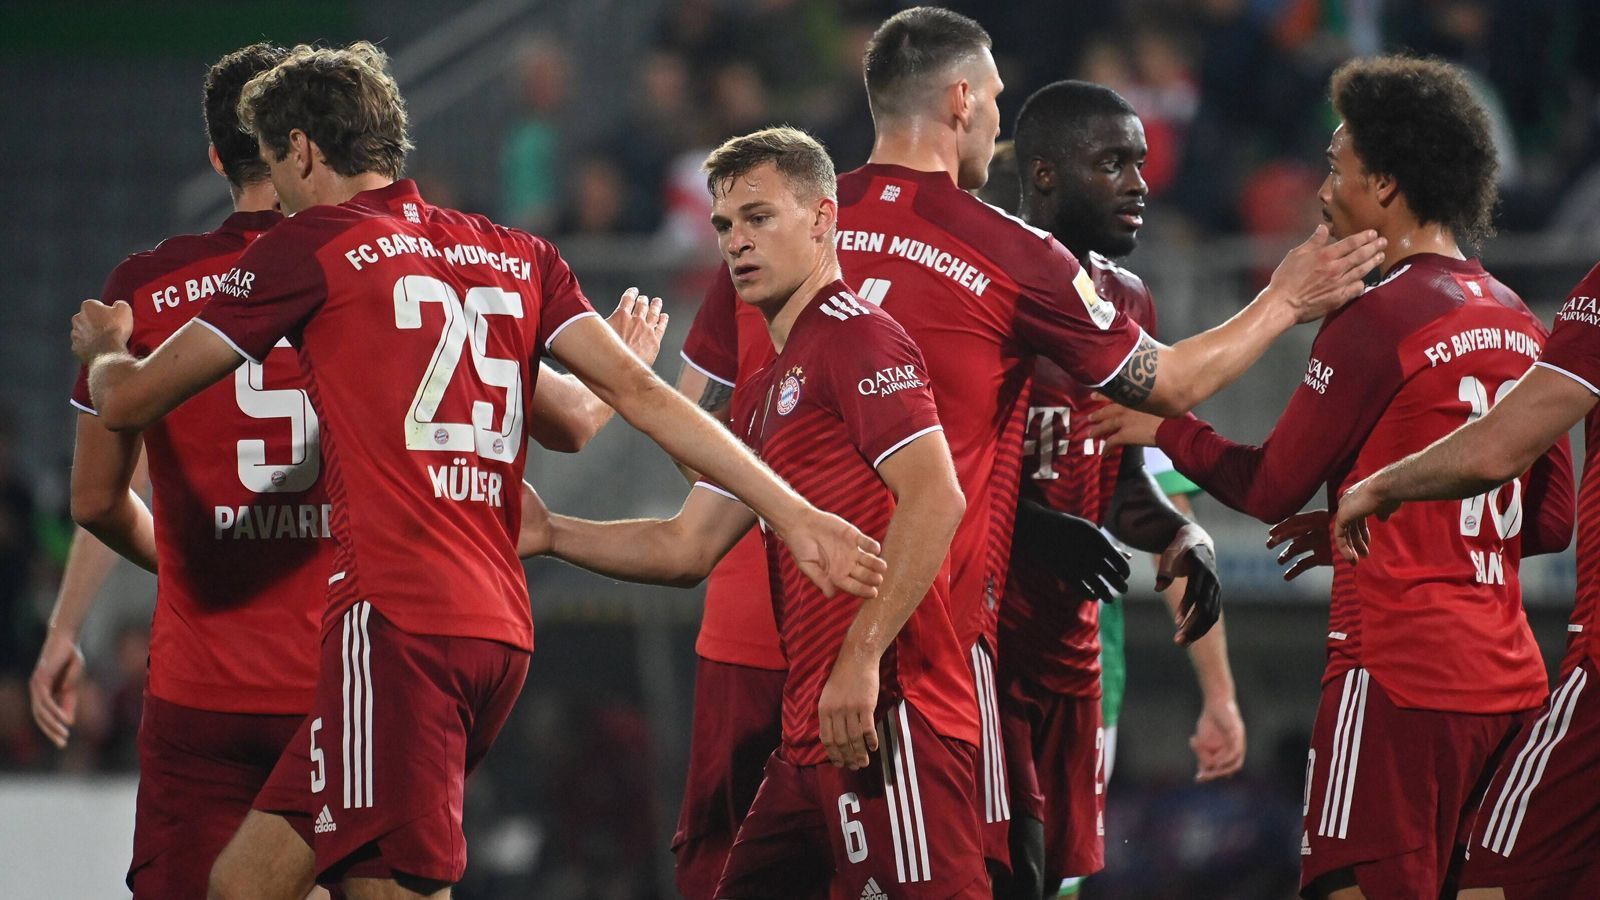 
                <strong>Die Noten der Bayern-Stars gegen Fürth</strong><br>
                Eine Halbzeit in Unterzahl und dennoch locker zum nächsten Dreier: Der FC Bayern gewinnt mit 3:1 gegen Greuther Fürth, Robert Lewandowski schrammt allerdings am nächsten Rekord vorbei. Die ran-Noten für die Bayern-Stars.
              